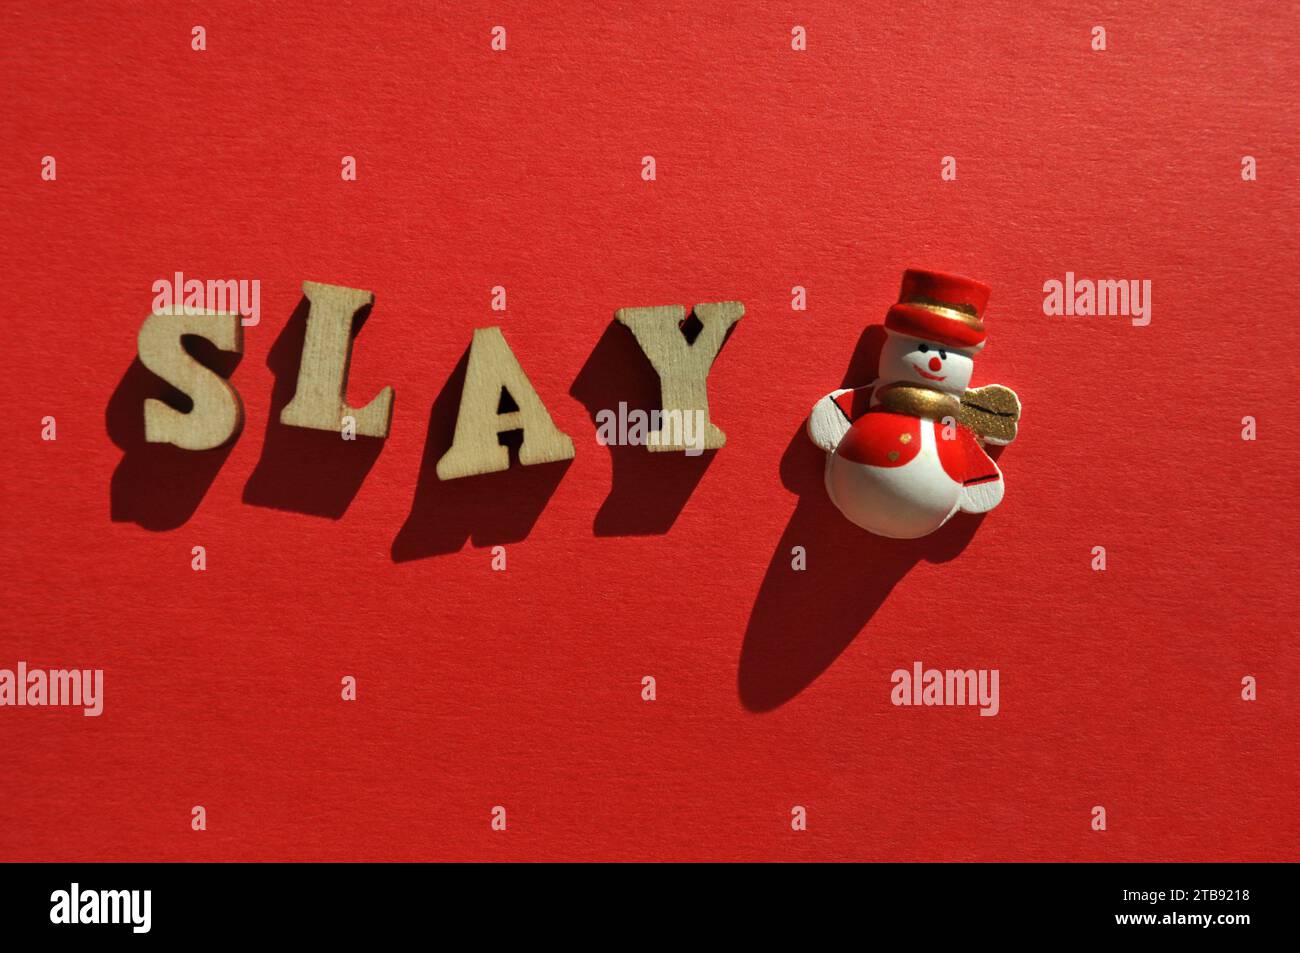 Uccidi, parola in lettere alfabetiche di legno con graziosa decorazione di pupazzi di neve natalizi, concetto creativo Foto Stock